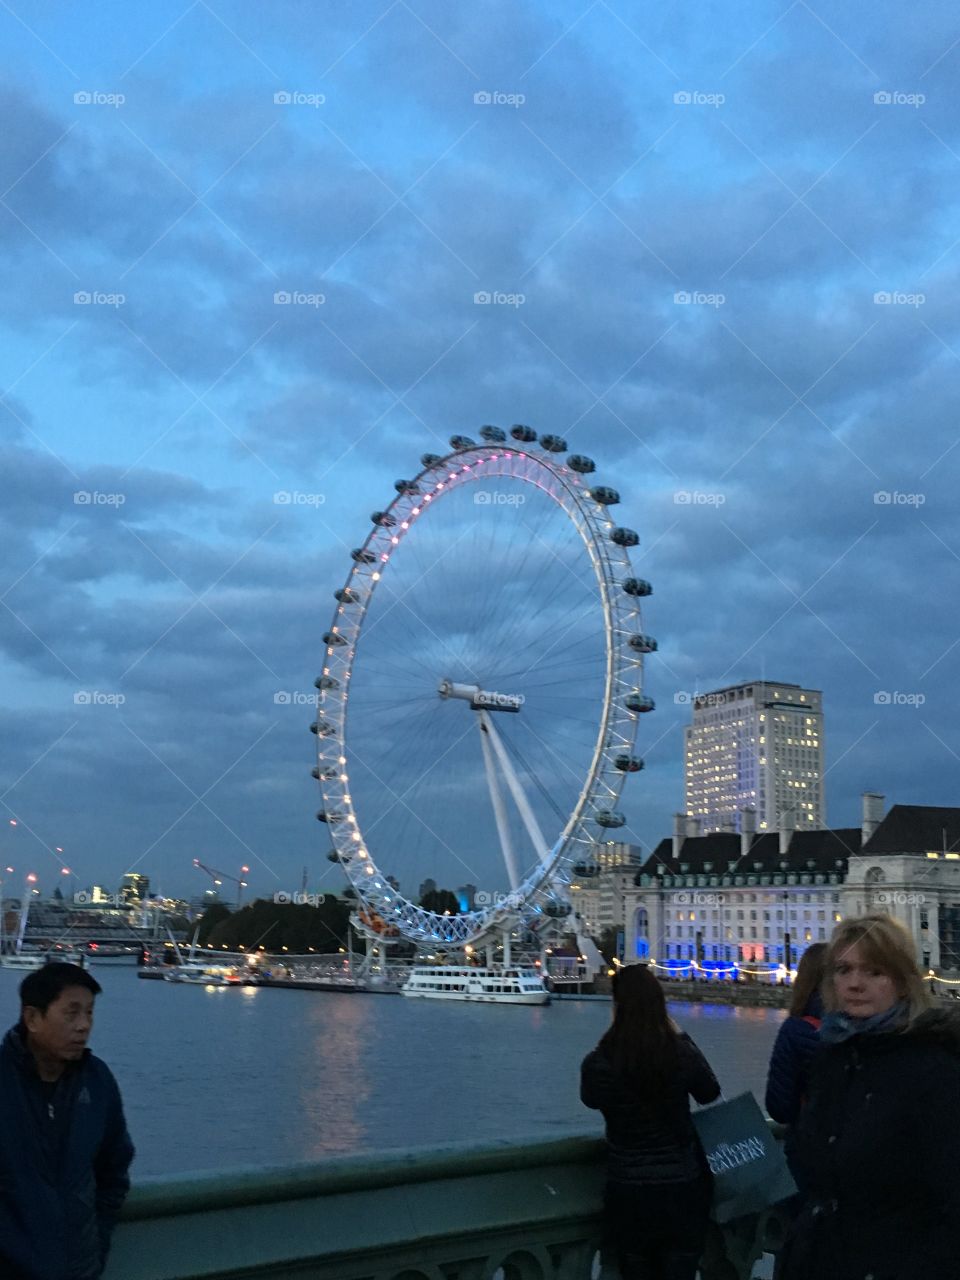 London eye at dusk 